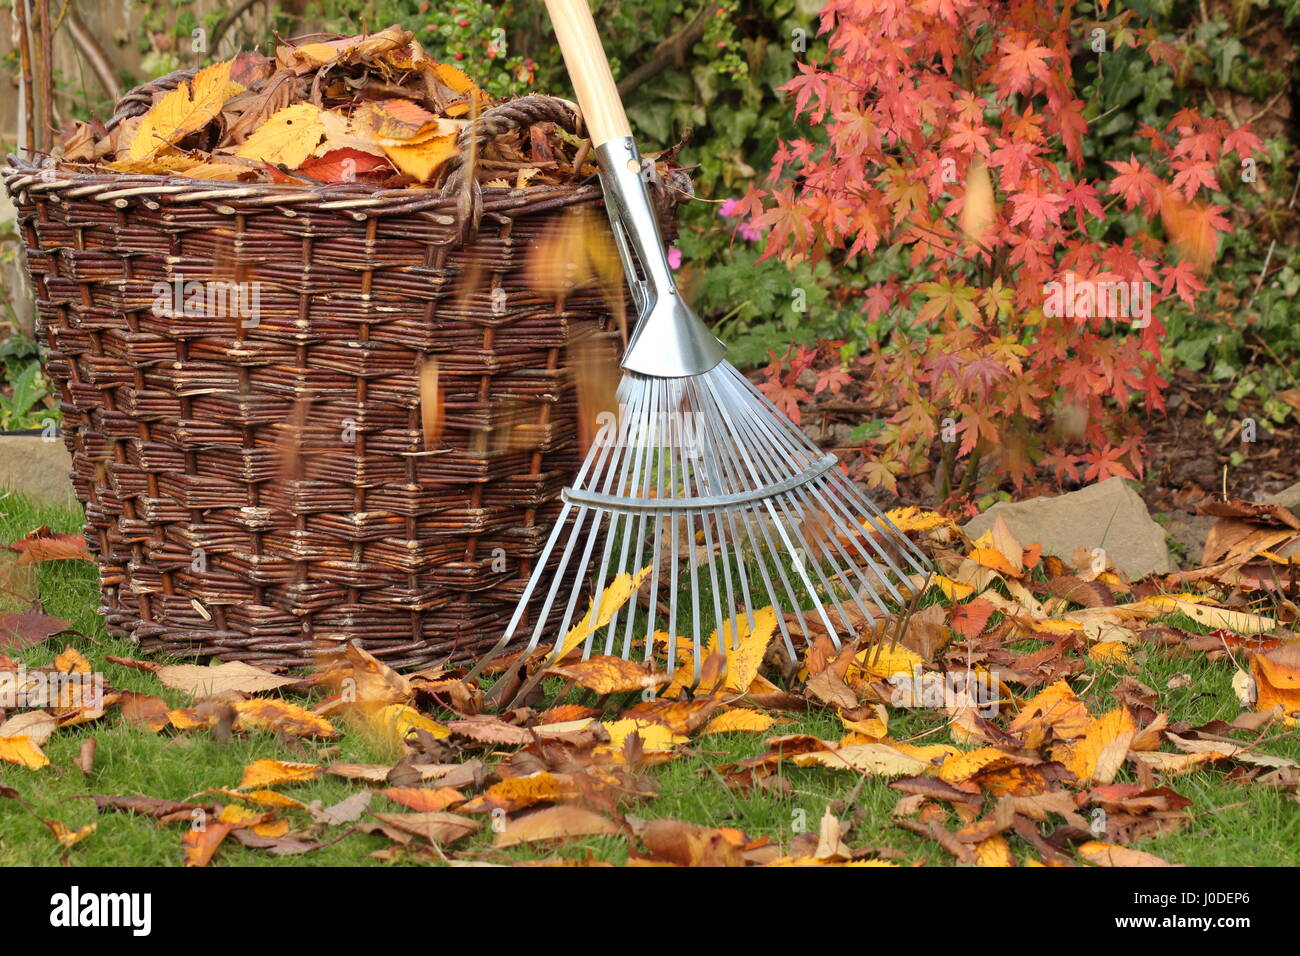 Foglie cadute sgomberate da un prato giardino in un cesto di tessuto in un luminoso giorno d'autunno, Regno Unito Foto Stock